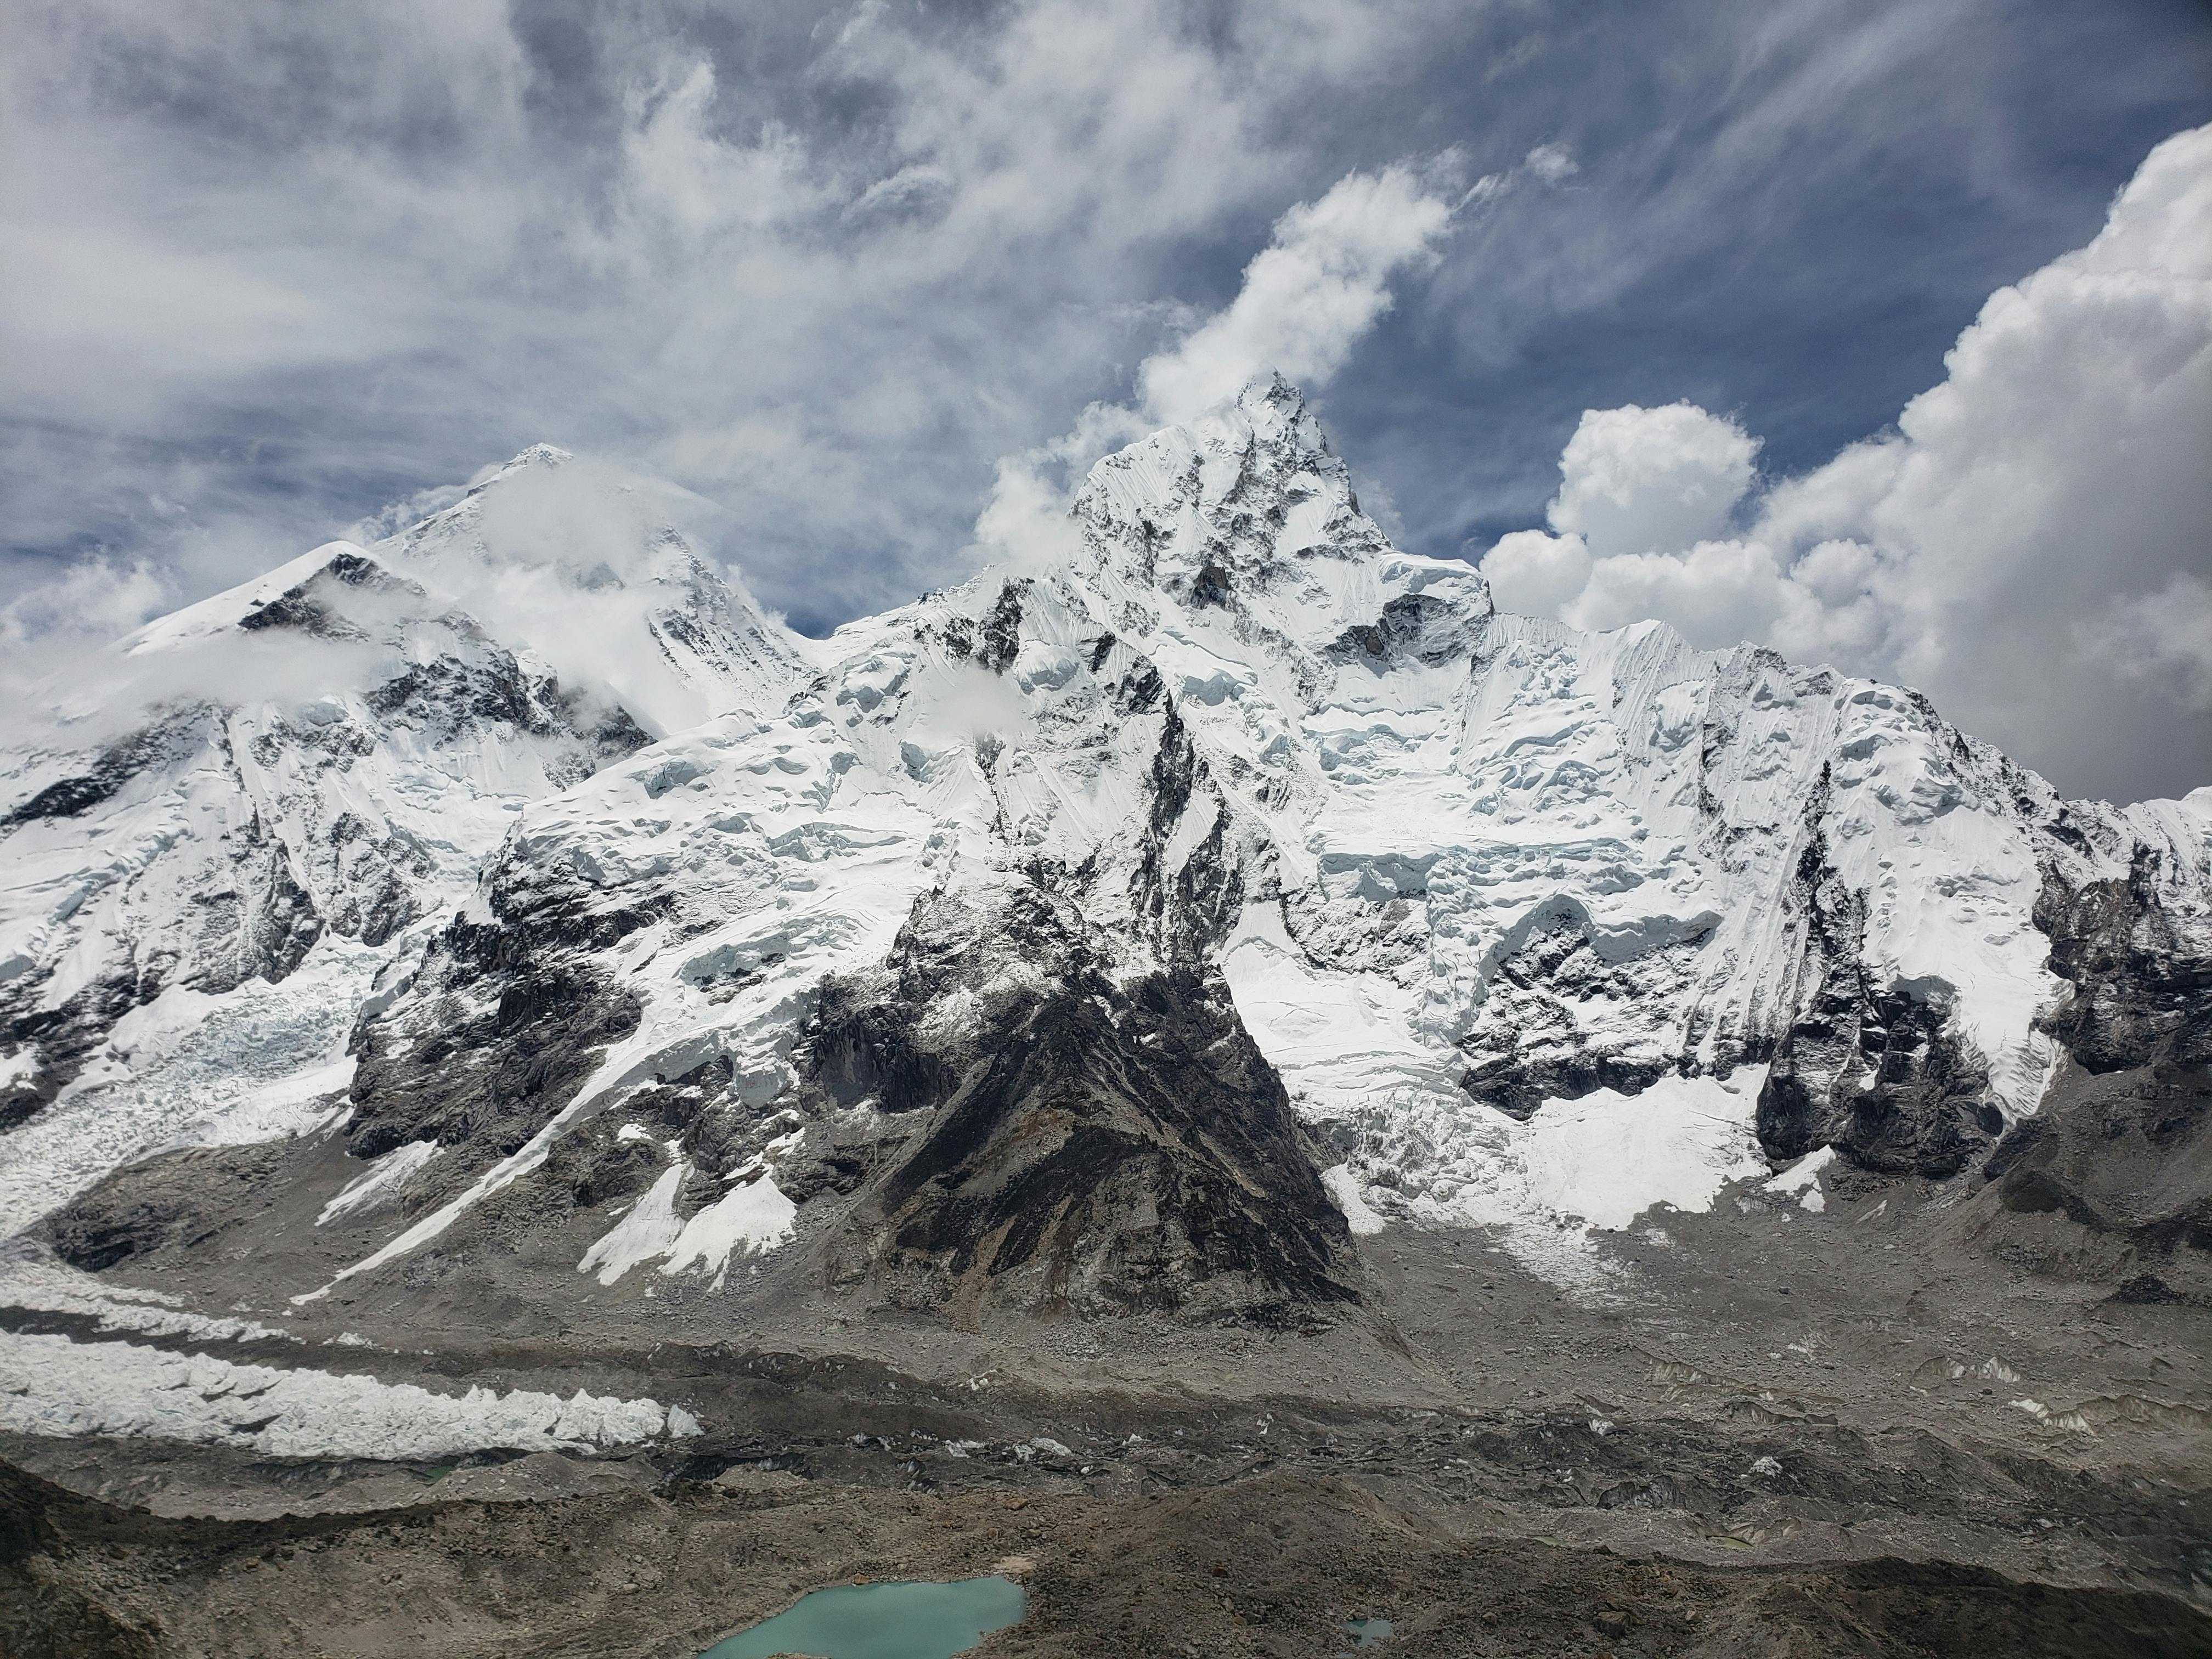 Hình nền Nền đội Leo Núi đầu Tiên Của Mt Everest đã Lên Tới đỉnh Núi Everest  Nền, Hình ảnh đỉnh Everest Nhìn Từ Trên Cao, Núi, Tây Tạng Background  Vector để